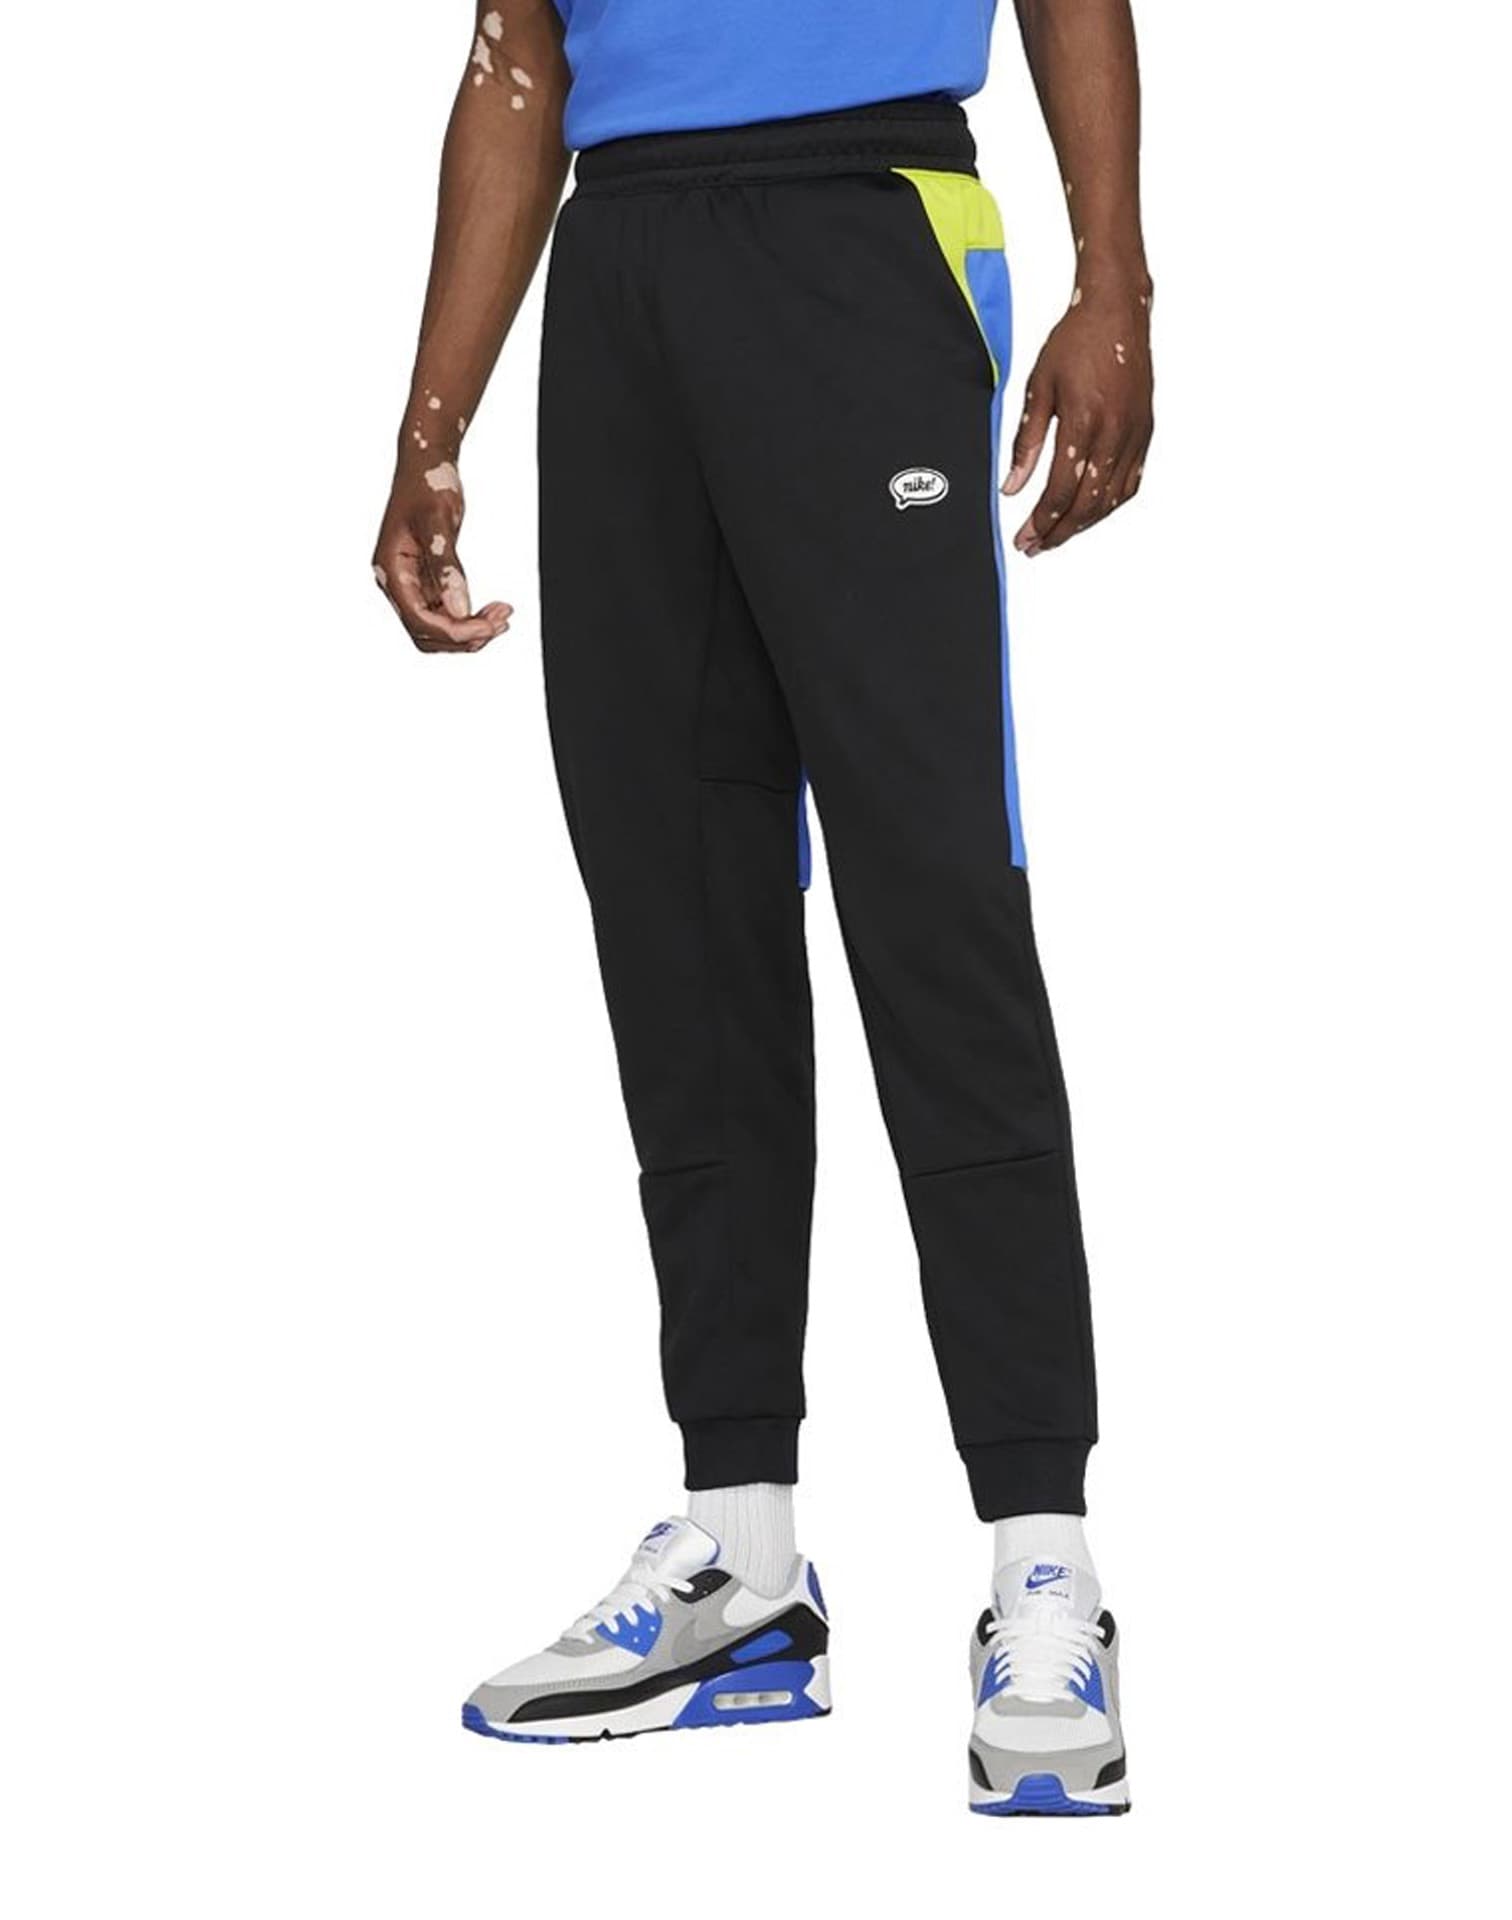 Falange Proporcional observación Nike Nsw N98 Track Pants – DTLR